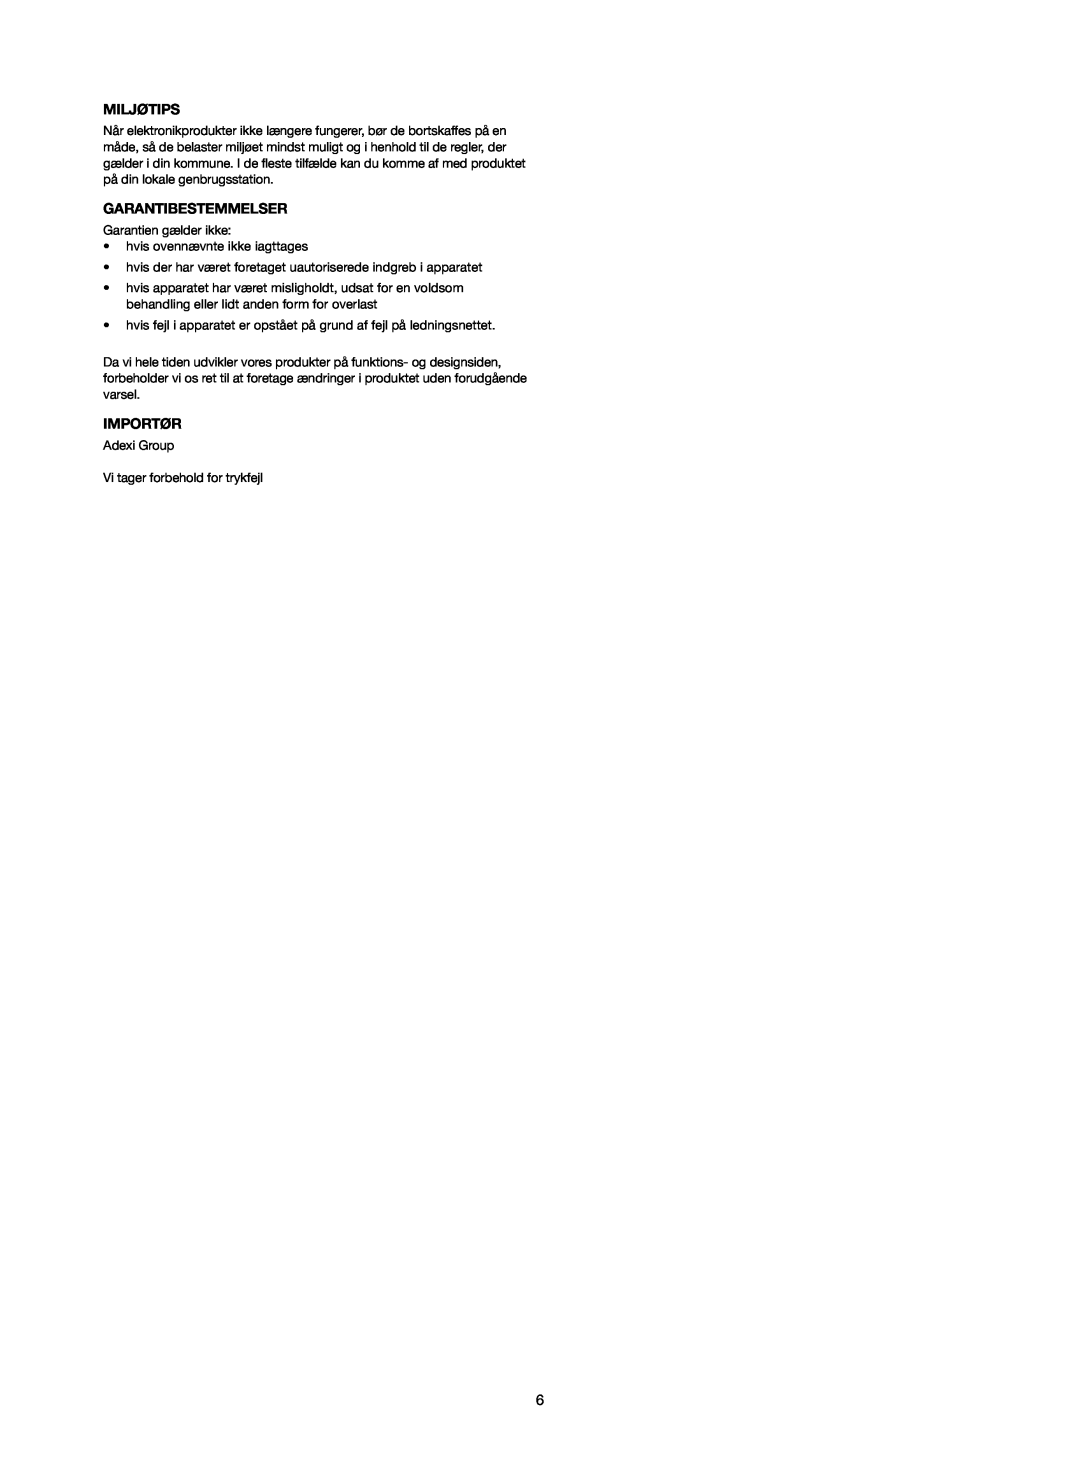 Melissa 253-006 manual Miljøtips, Garantibestemmelser, Importør 